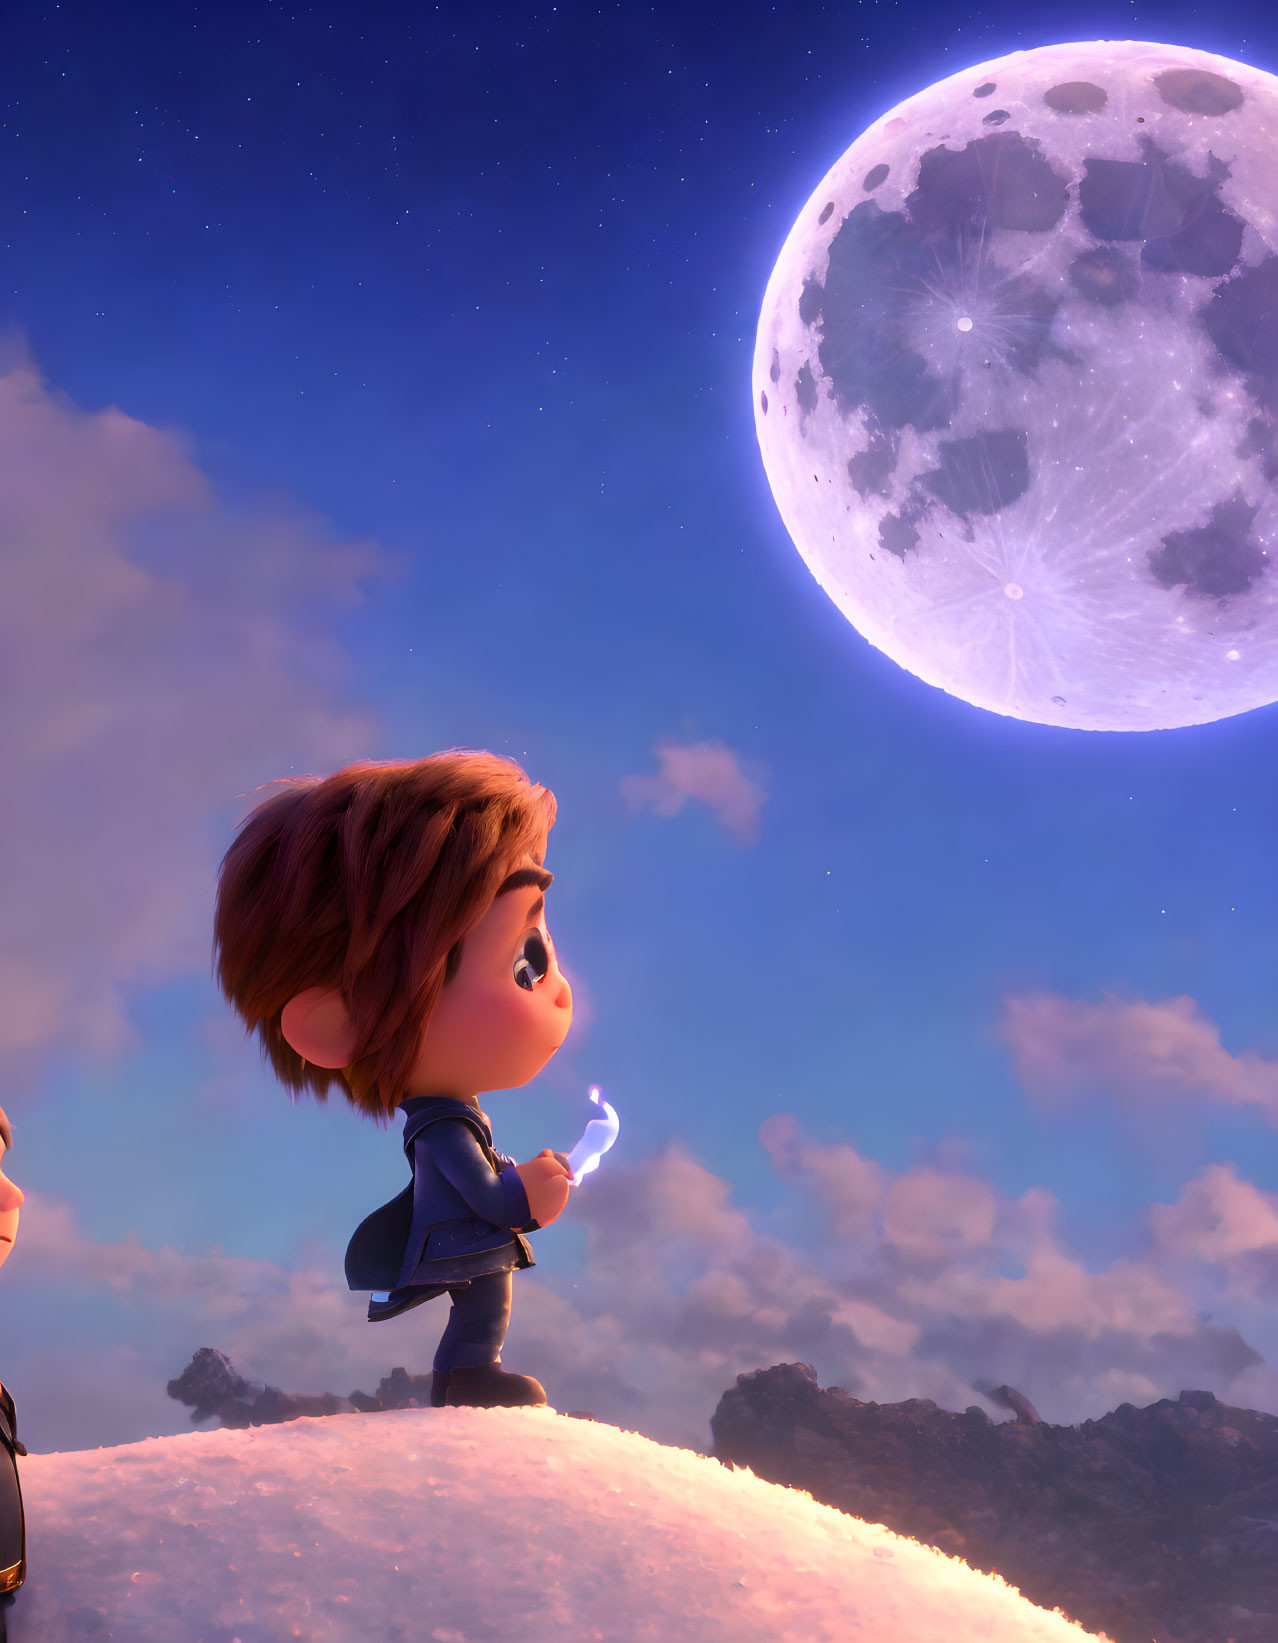 Child on hilltop gazes at large moon in twilight landscape